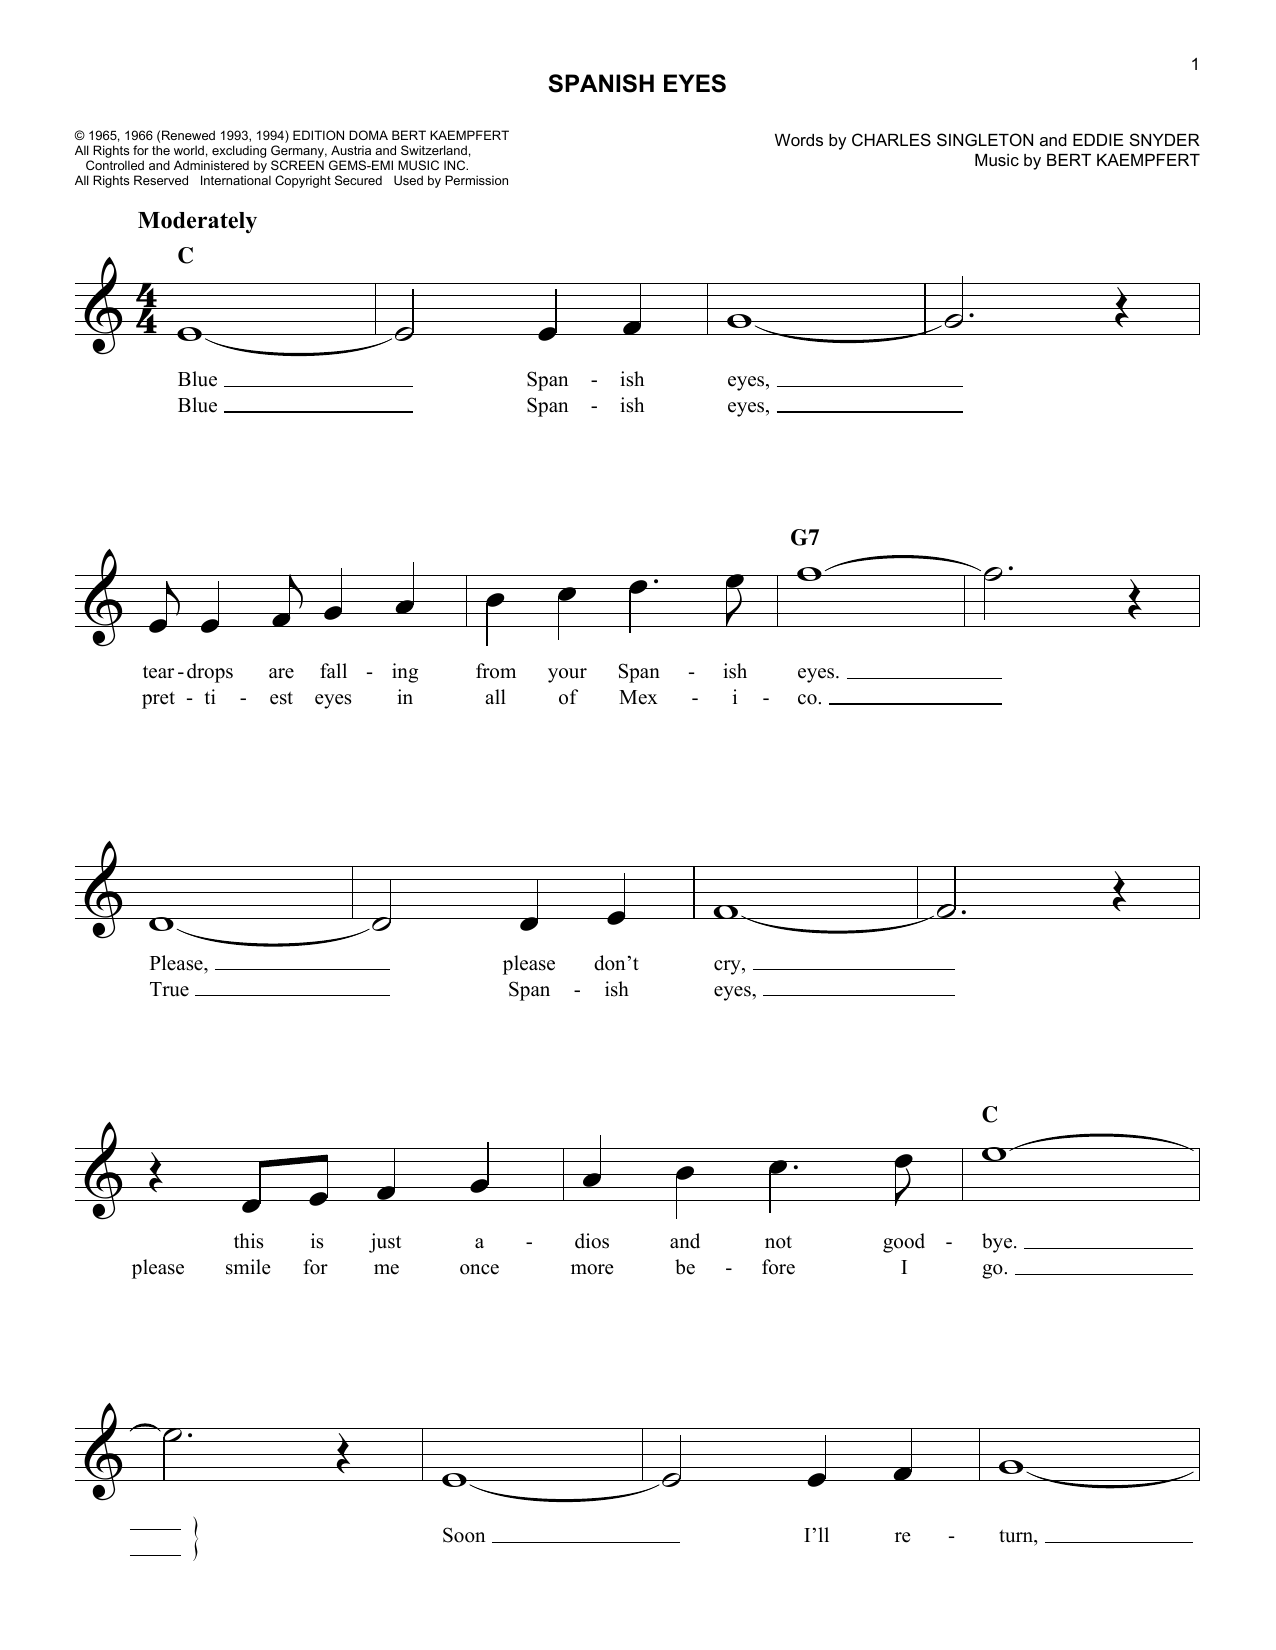 Charles Singleton Spanish Eyes Sheet Music Notes & Chords for Lead Sheet / Fake Book - Download or Print PDF